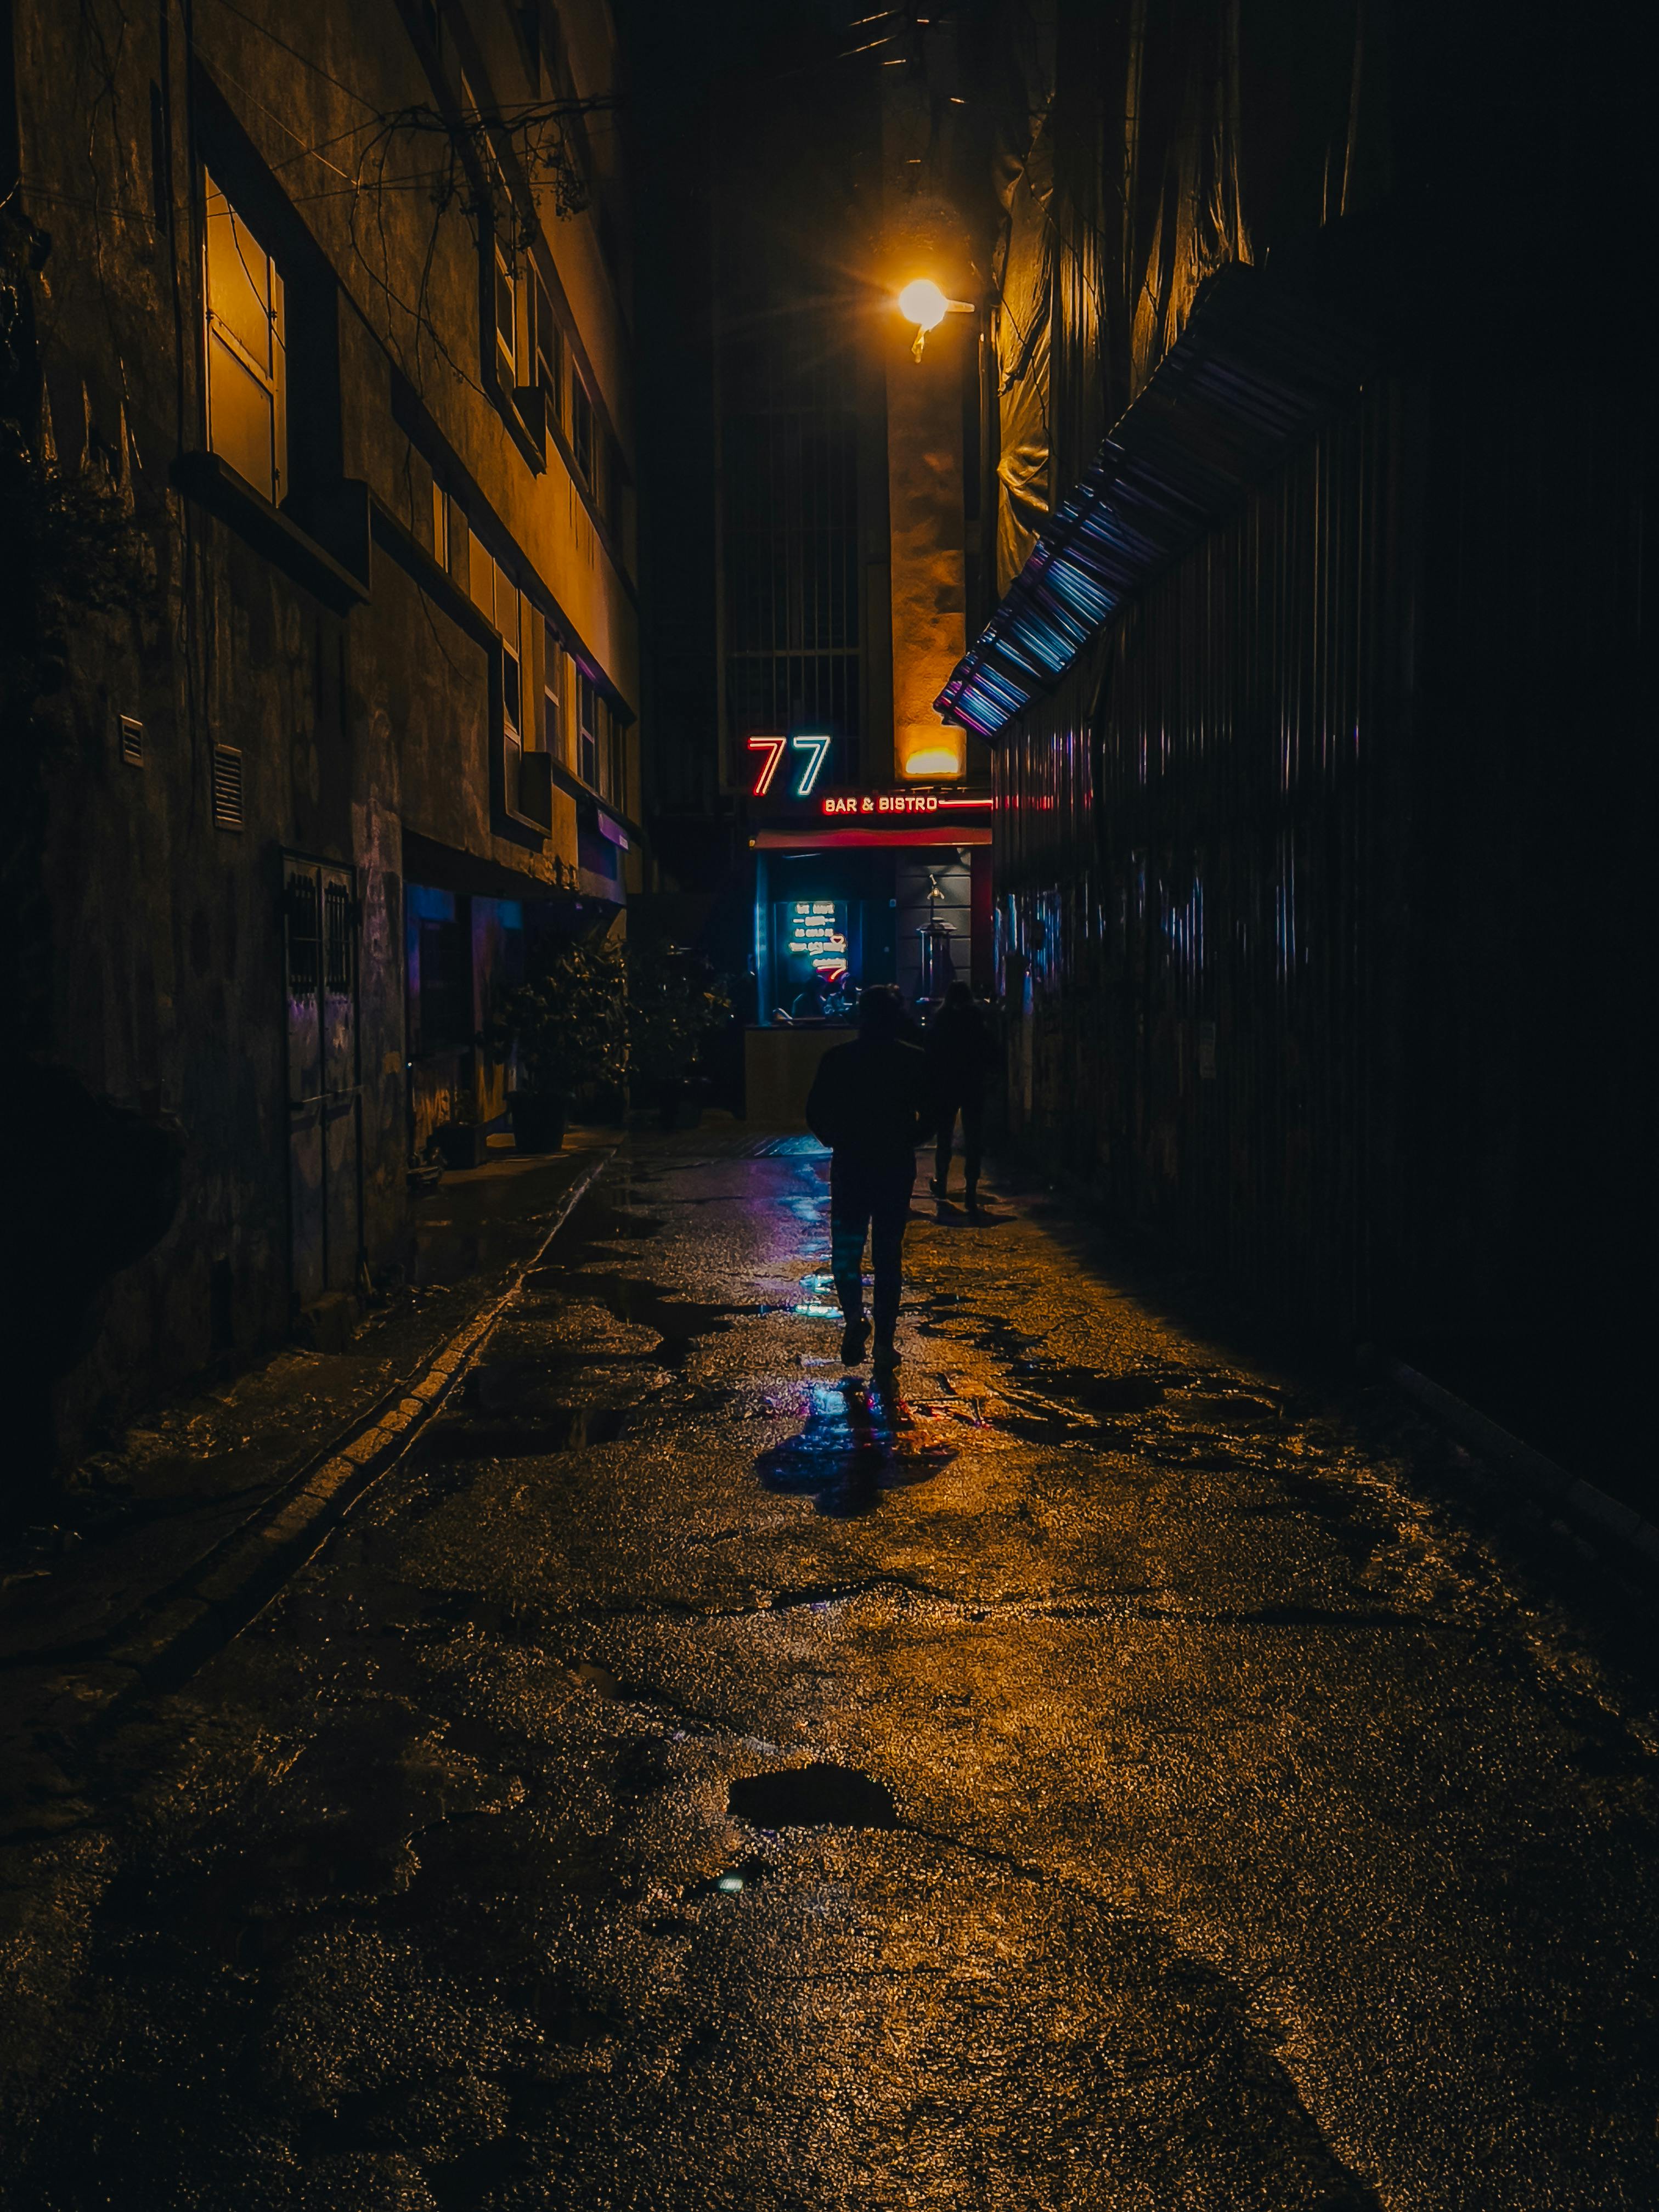 Đường Phố Tối: Bóng tối của đêm mang đến sự bí ẩn và huyền bí cho thành phố. Và đường phố tối là một trong số những nơi hằng đêm tạo ra vẻ đẹp khác lạ nhưng không kém phần thú vị. Khám phá hình ảnh tuyệt đẹp của đường phố tối để cảm nhận sự độc đáo và rung động.